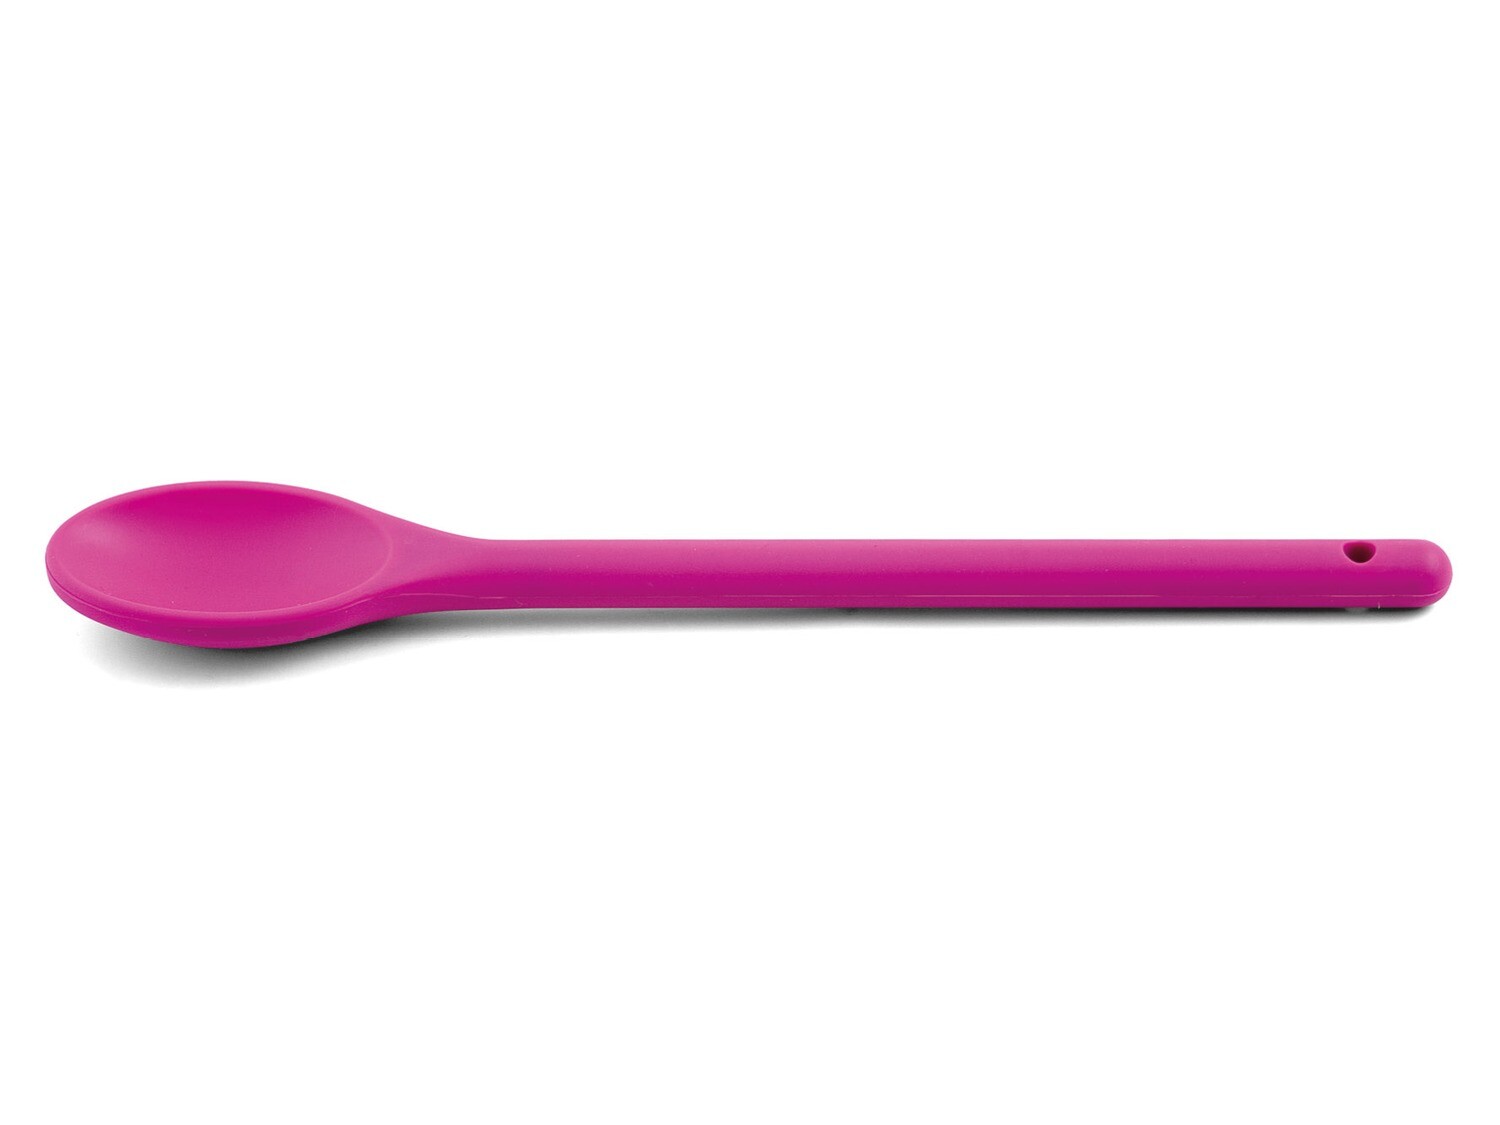 Cucchiaio in silicone 30 cm viola - Weis